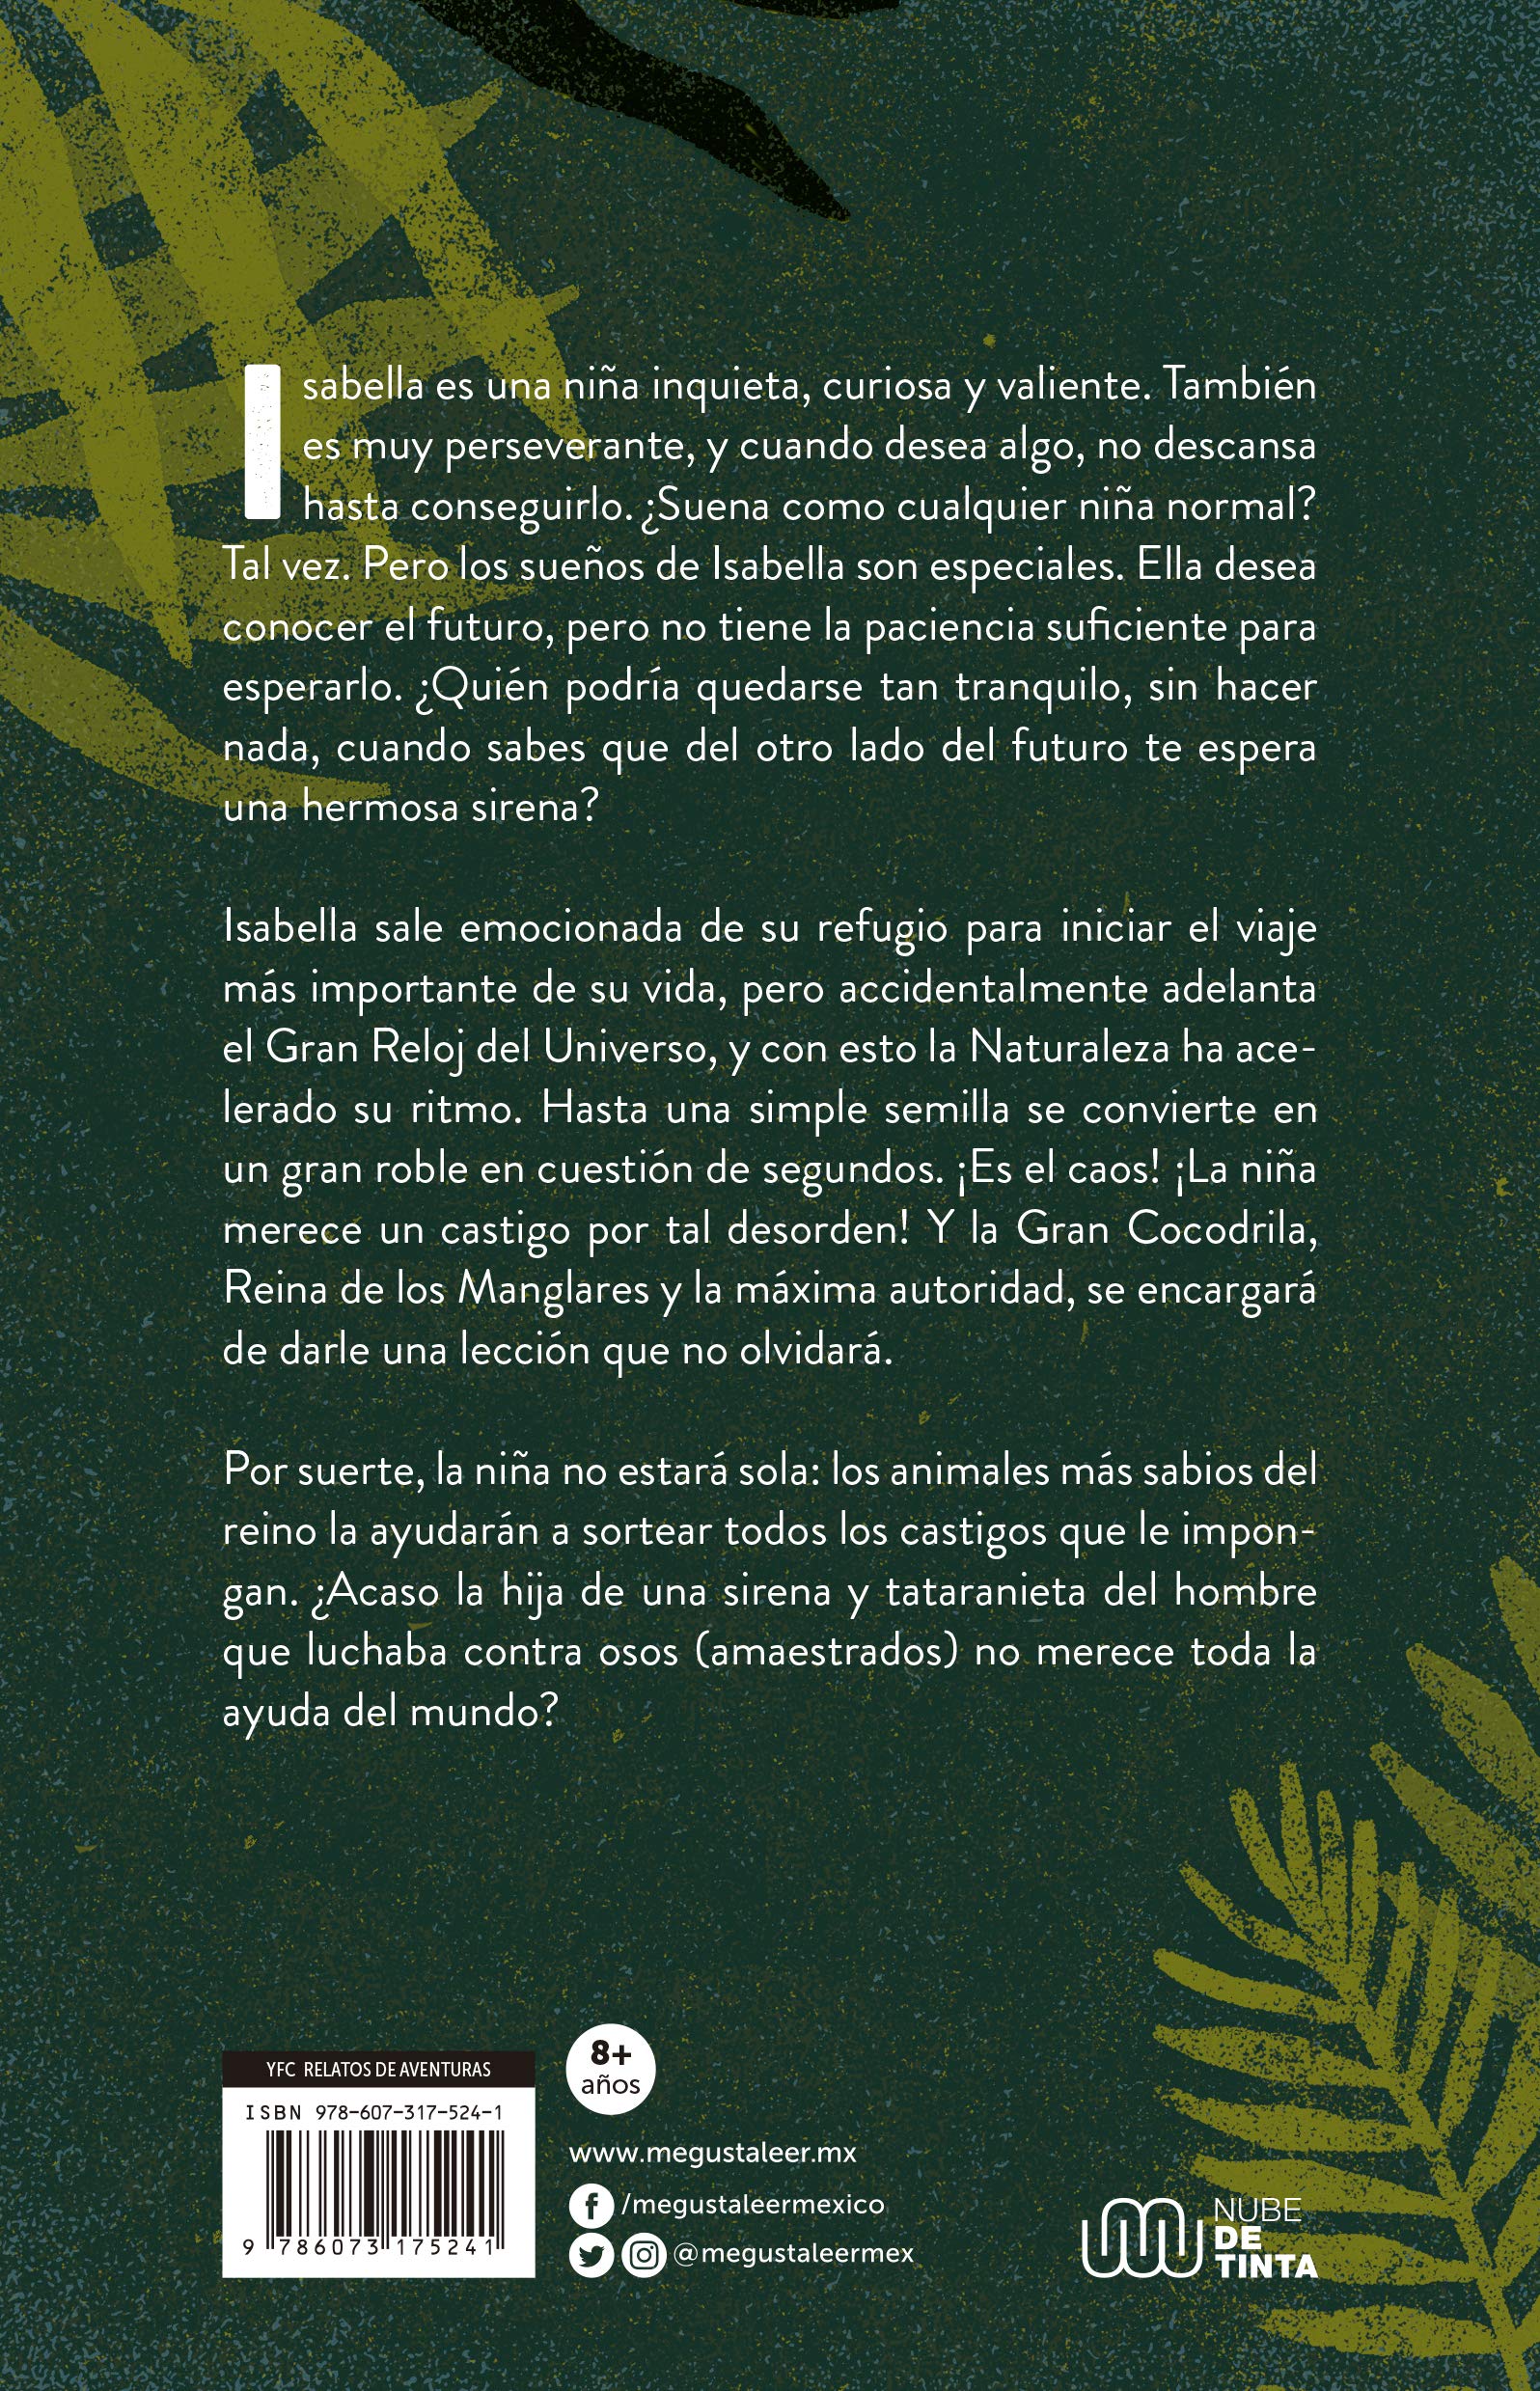 Libro: La Niña Que Adelantó El Gran Reloj por Carlos Pascual y Jimena Estíbaliz